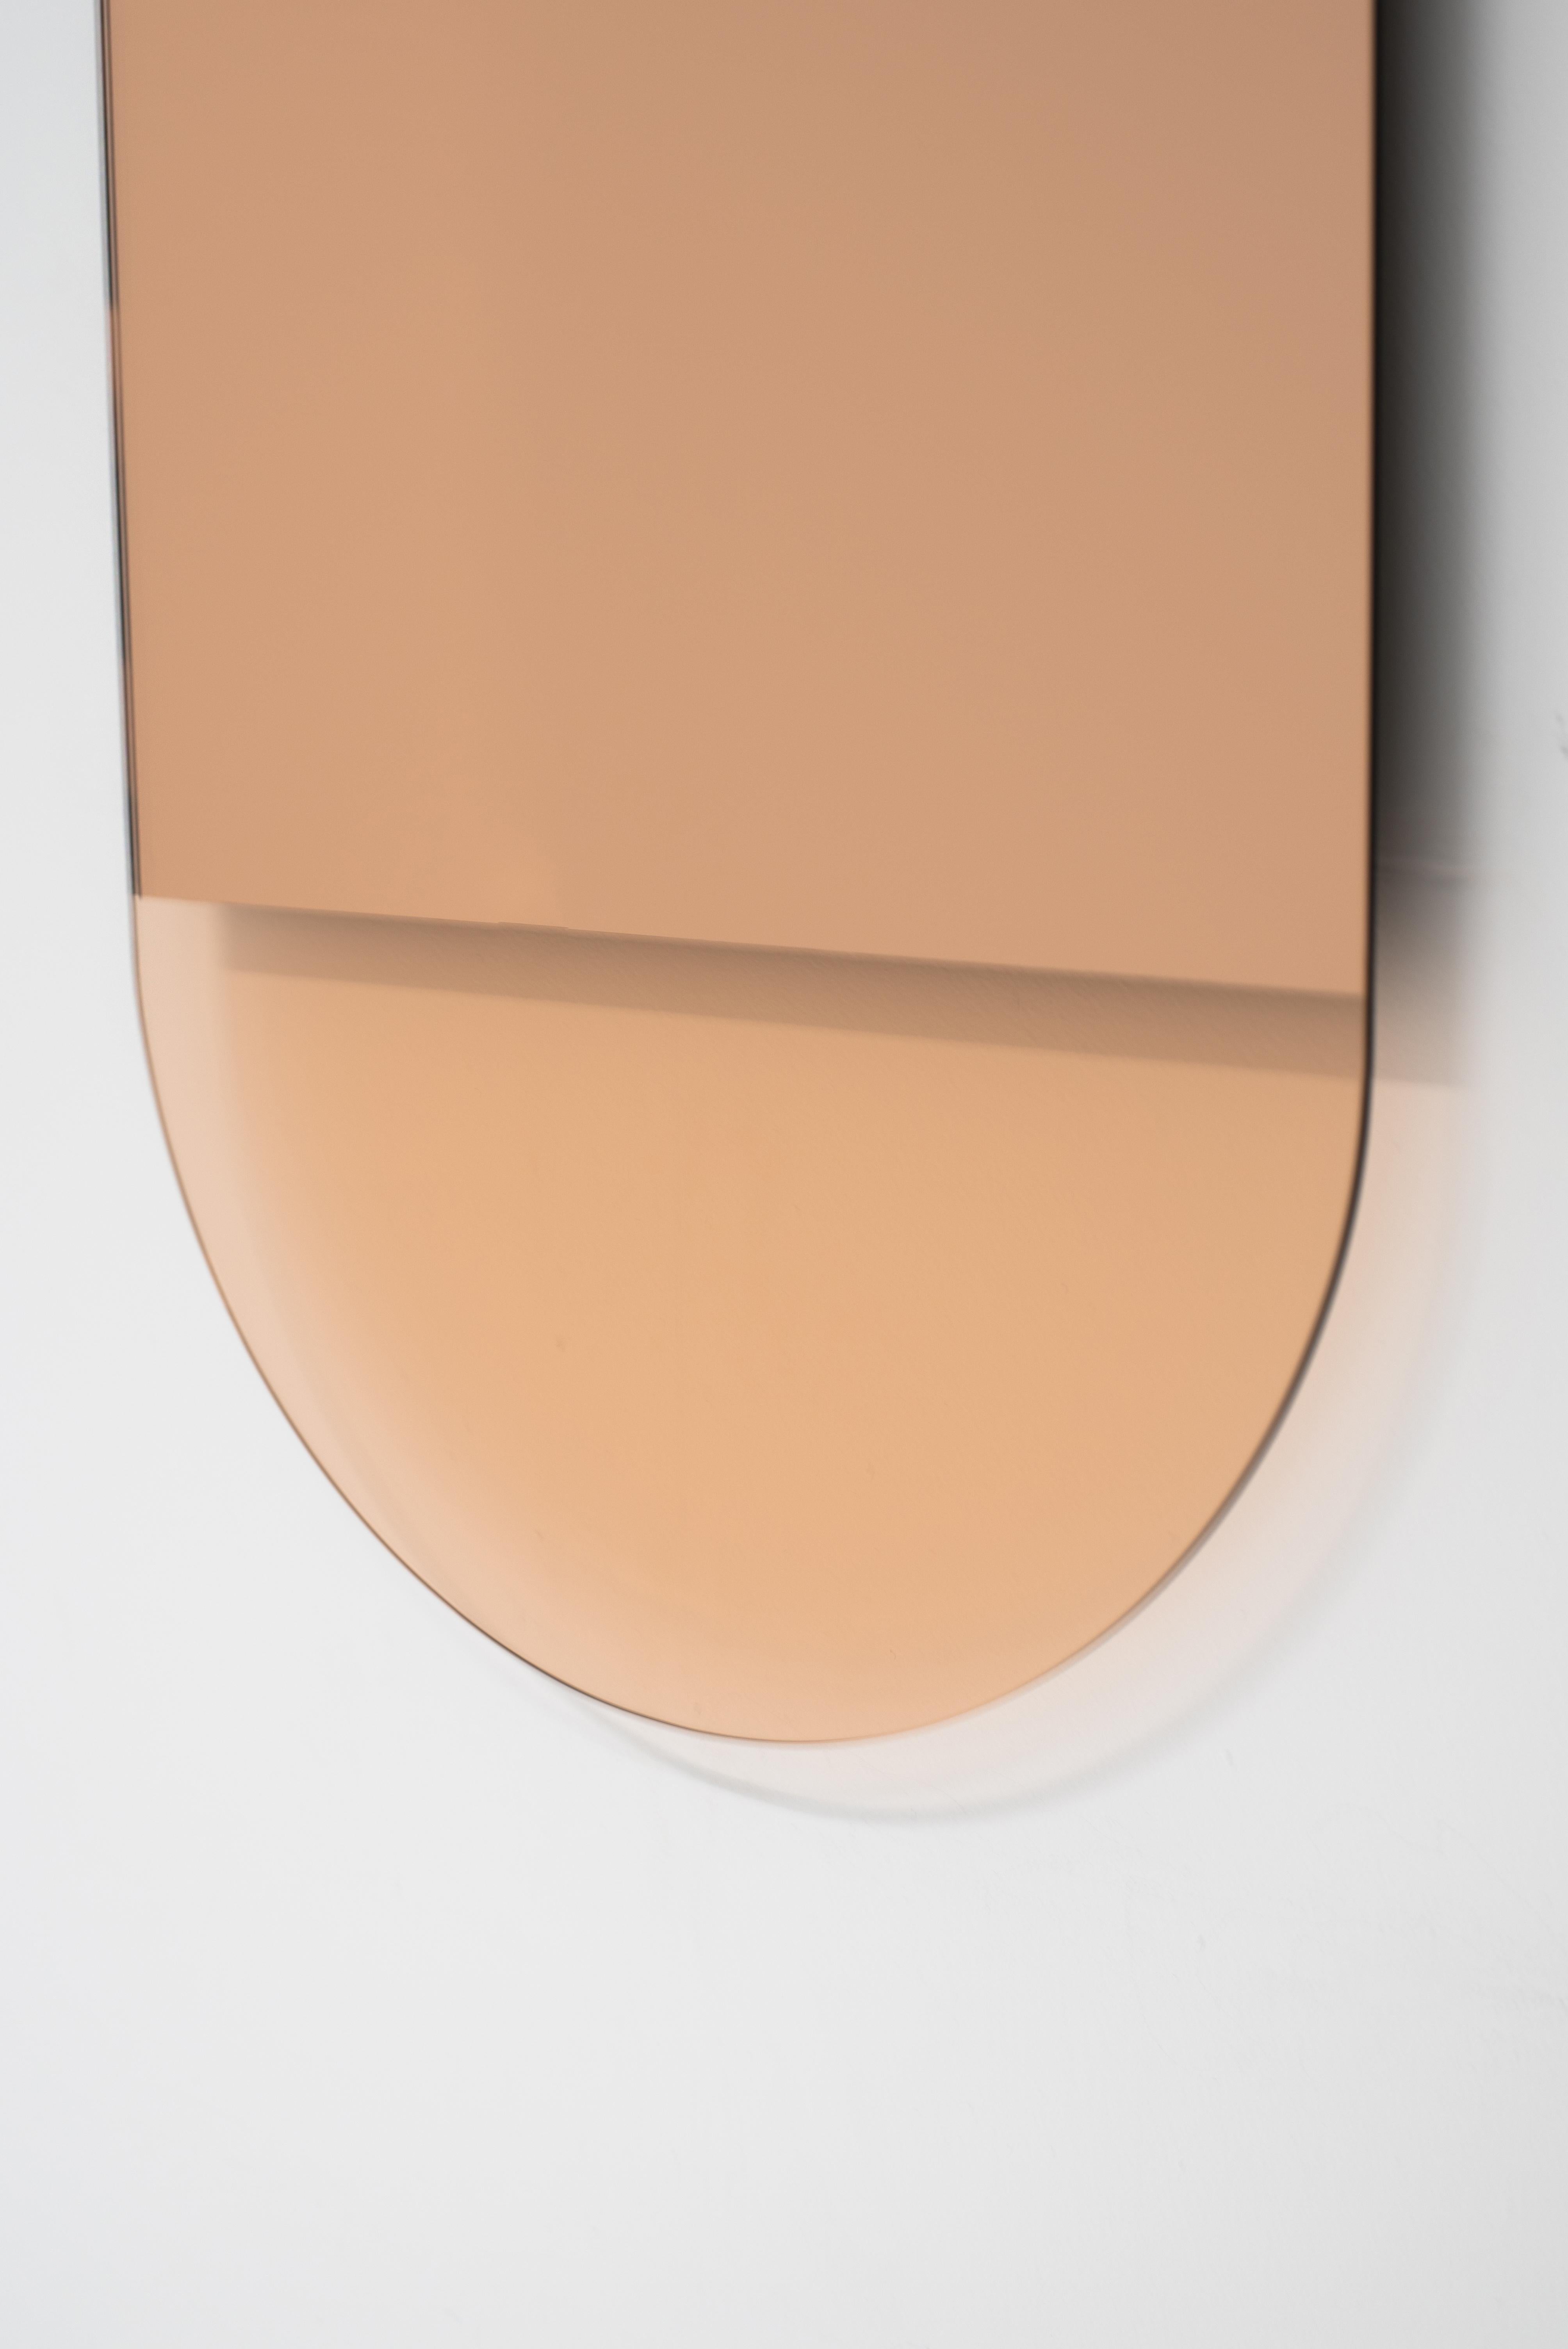 Der Spiegel IDA No. 3 von Ben und Aja Blanc verbindet eine minimalistische Form mit der Entfernung des Spiegels, um formale und tonale Verschiebungen in diesem vertikalen Spiegel zu erzeugen. Die warmen Roségoldtöne werden von pfirsichfarbenen